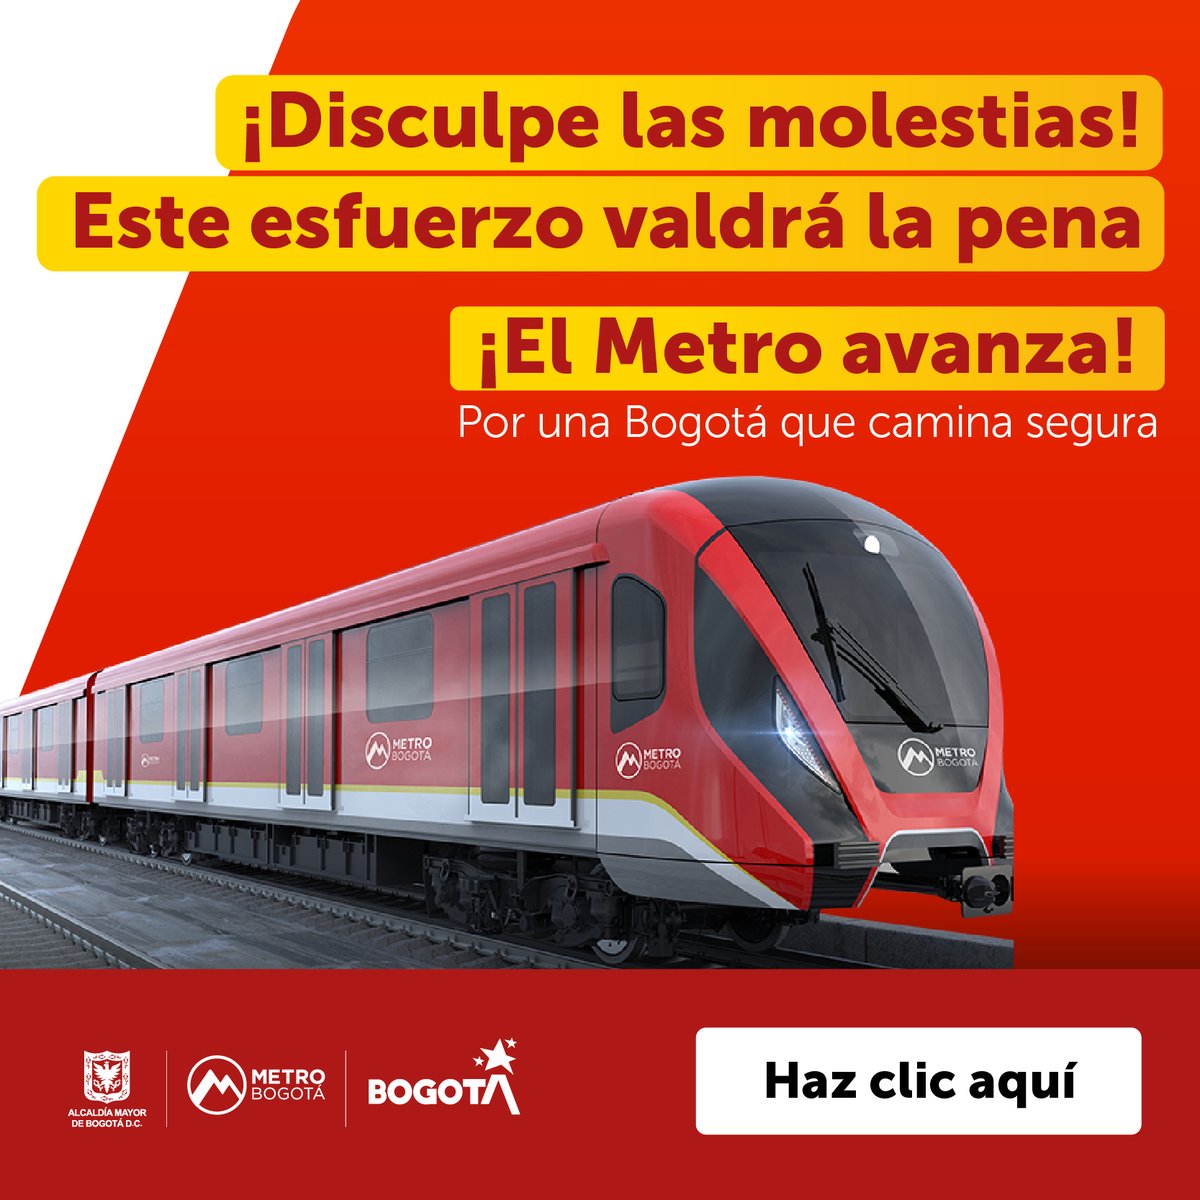 #ElMetroAvanza 🚆| Comenzaron las obras de la Primera Línea del @MetroBogota #PLMB 🚝por la av. Caracas, por lo que es necesario cerrar algunas estaciones de @TransMilenio. 🚨 La estación Marly dejará de operar el 25 de mayo. Conoce más en 👇 metrodebogota.gov.co/noticias/metro…